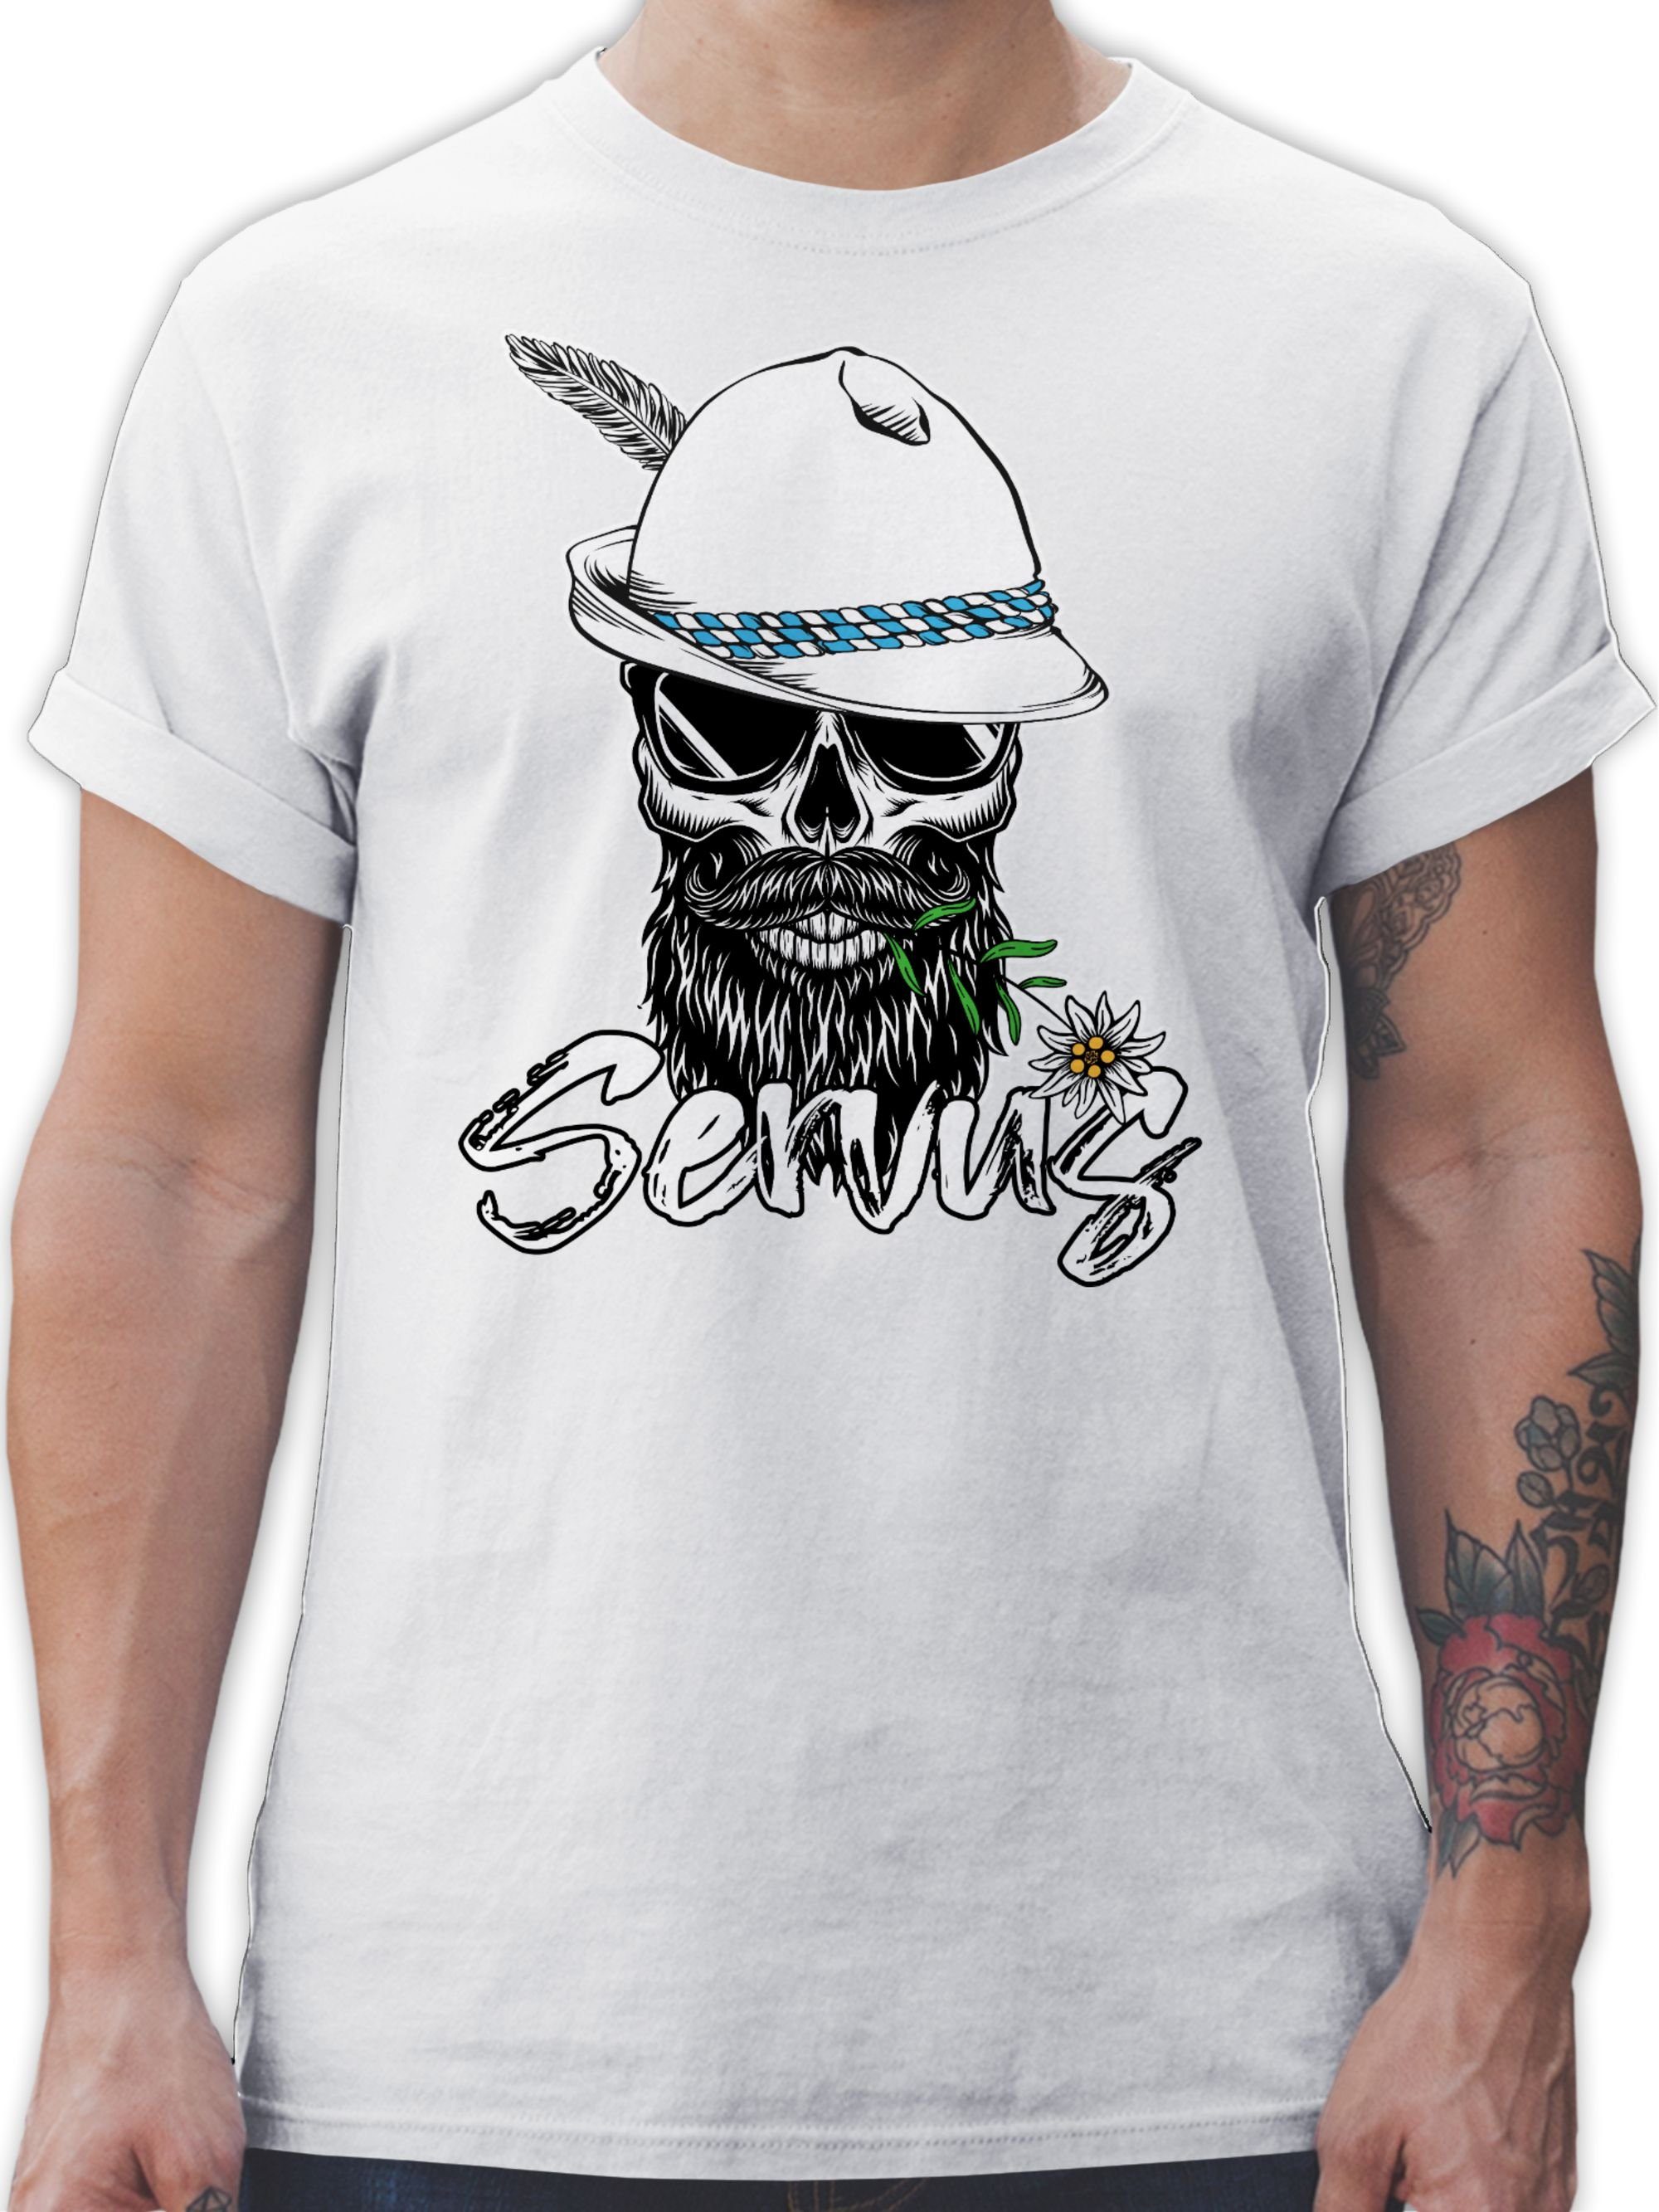 Shirtracer T-Shirt Servus Bayrisch Herren für Oktoberfest Totenkopf Weiß Mode 02 Skull